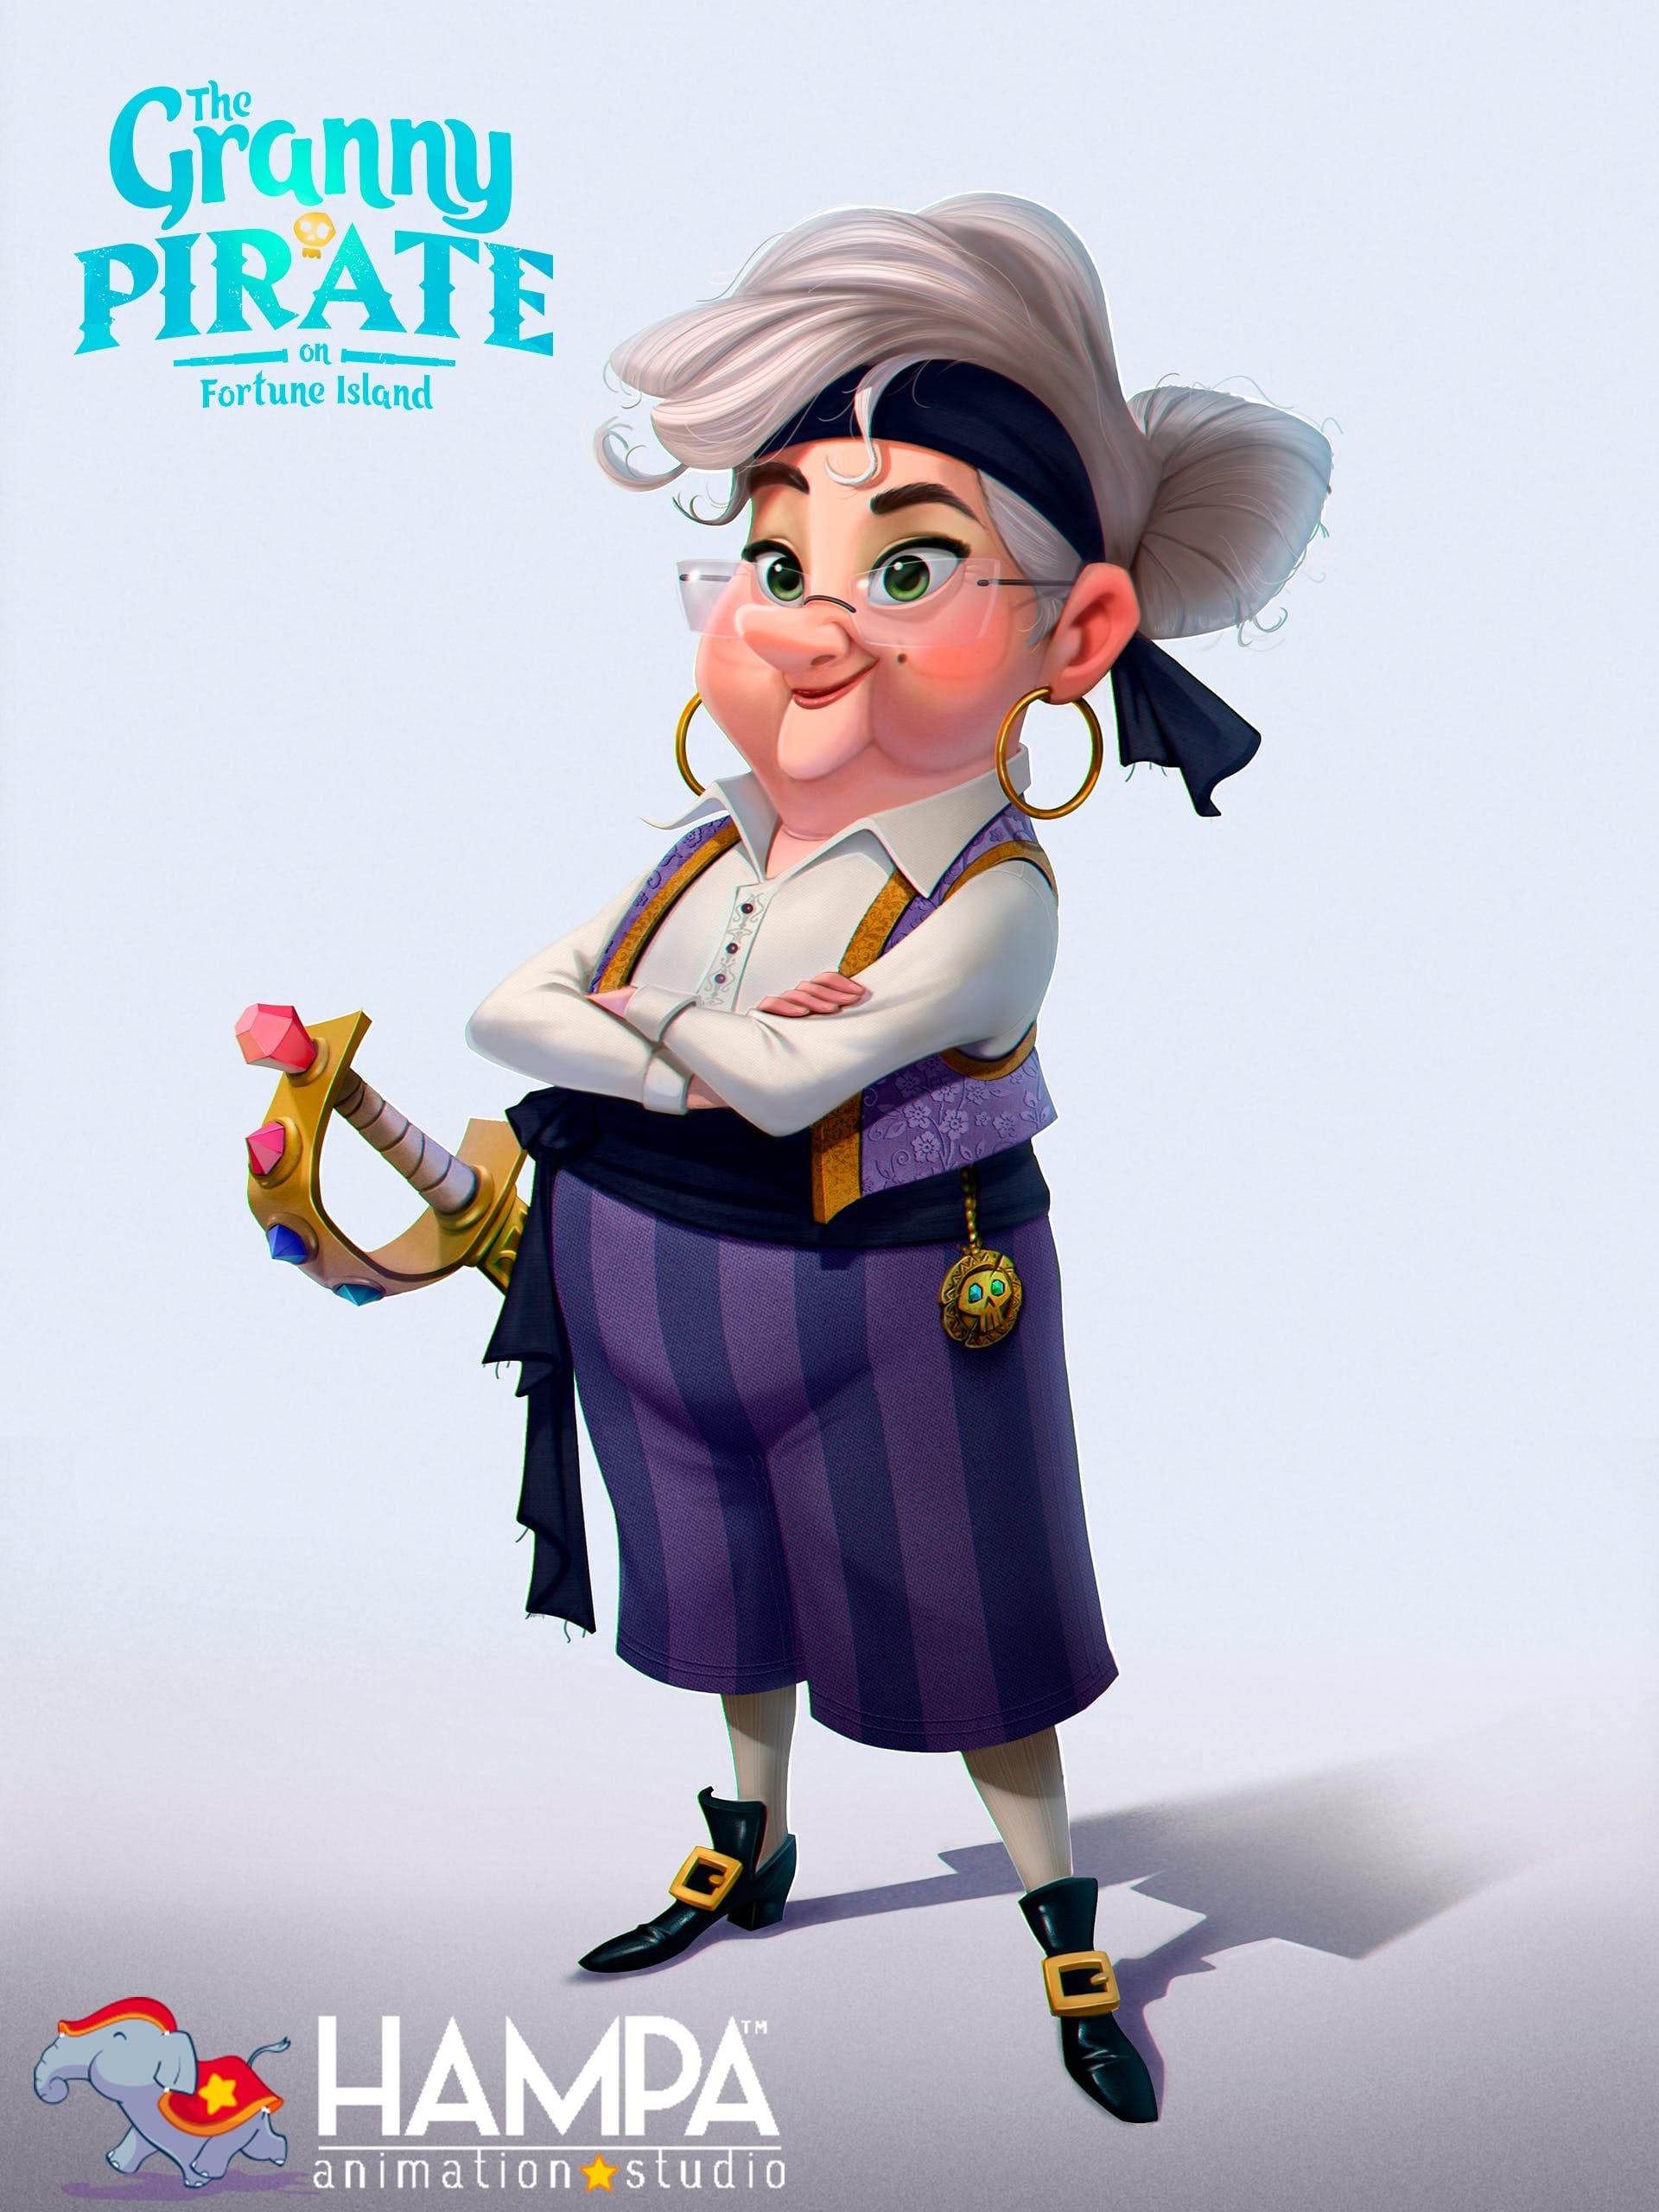 The Granny Pirate